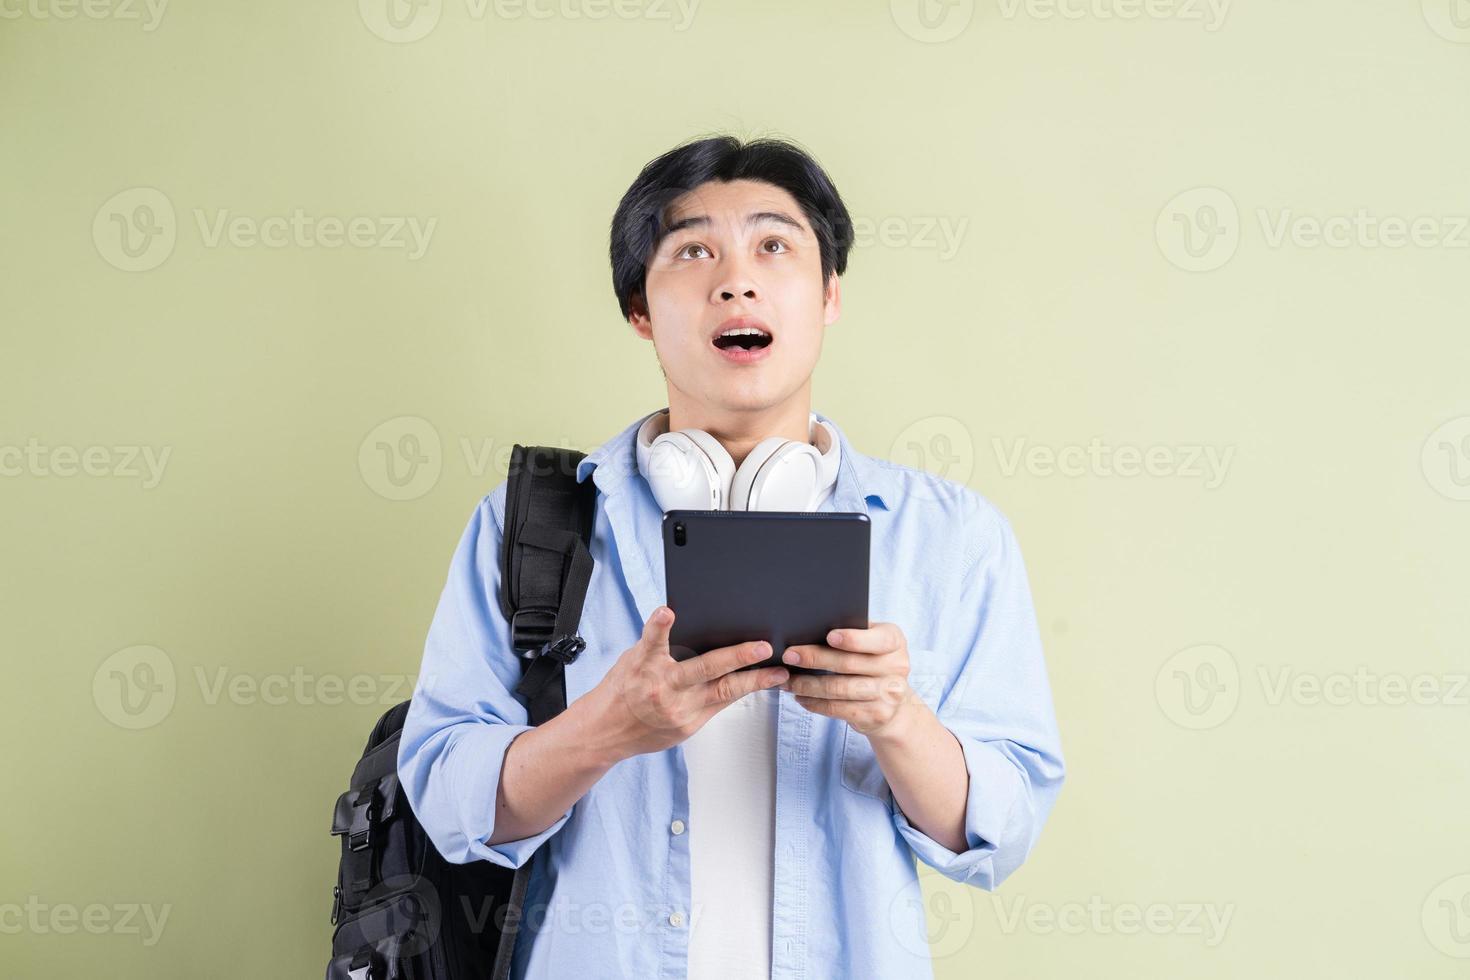 étudiant asiatique qui utilisait la tablette et leva les yeux avec une expression surprise photo